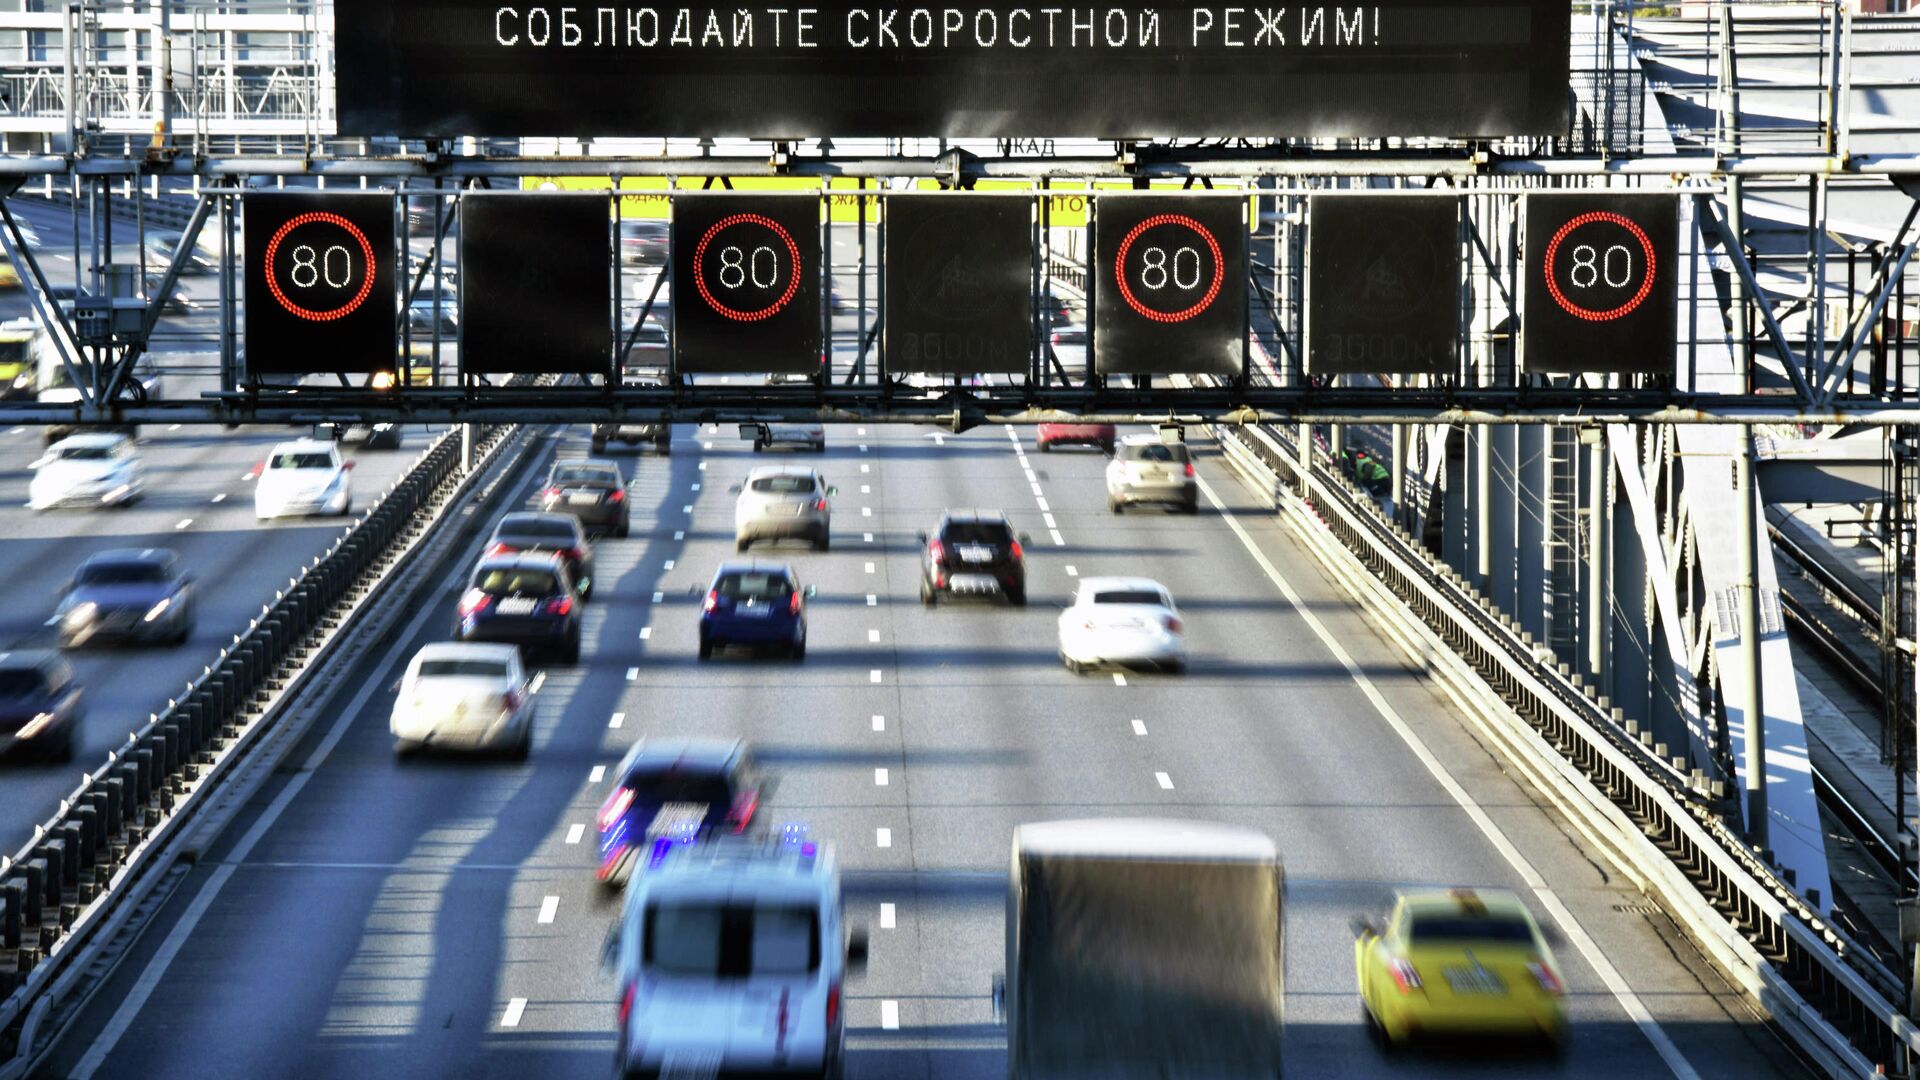 Предупреждение о соблюдении скоростного режима на Андреевском мосту в Москве - РИА Новости, 1920, 10.01.2022